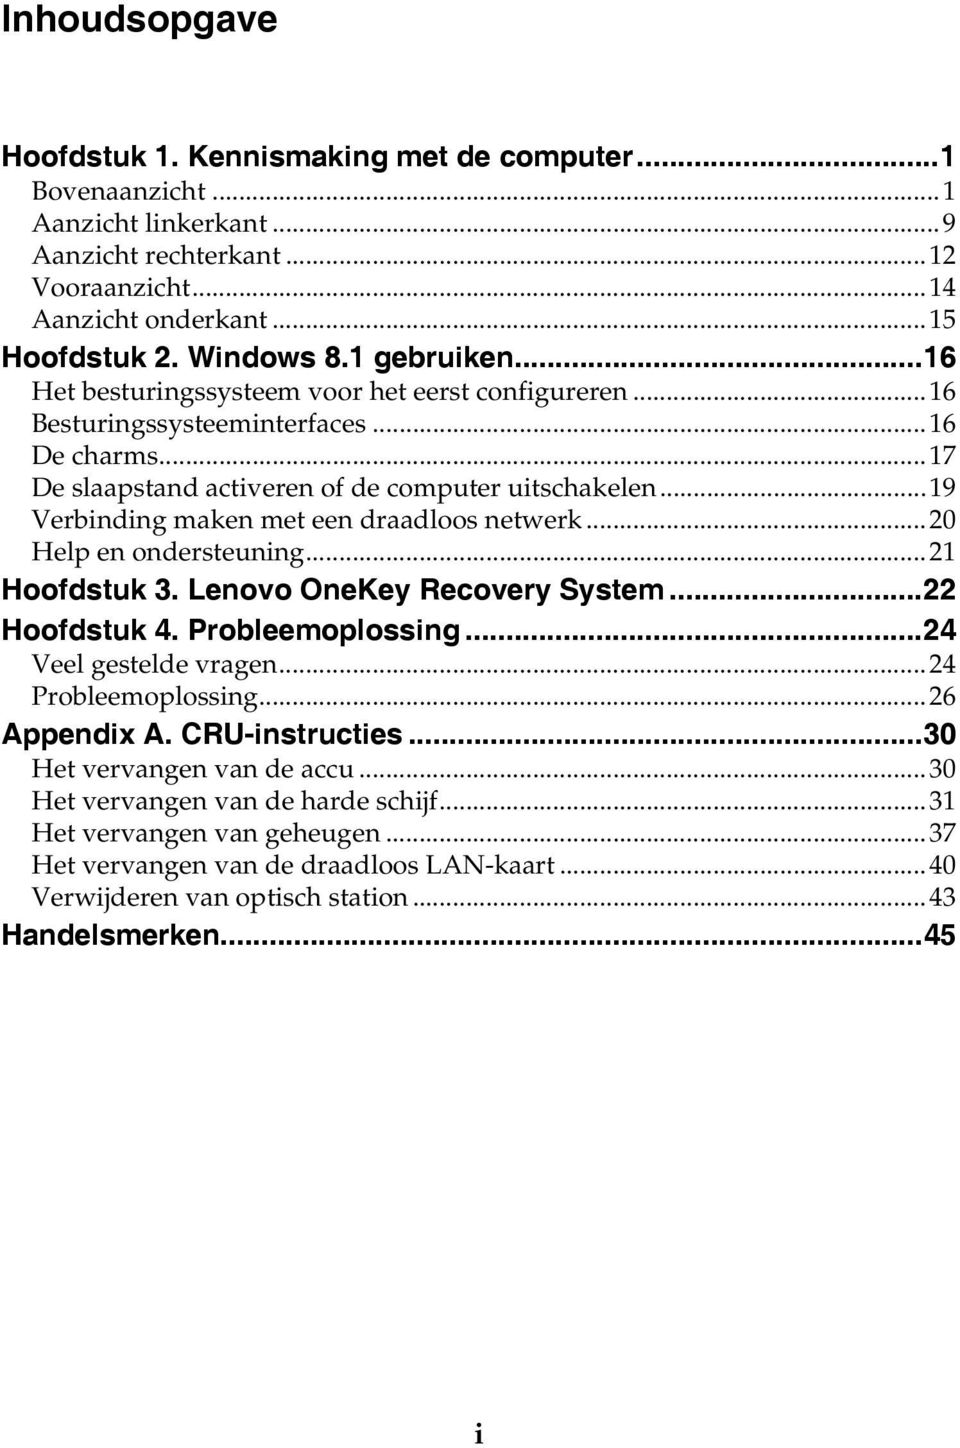 ..19 Verbinding maken met een draadloos netwerk...20 Help en ondersteuning...21 Hoofdstuk 3. Lenovo OneKey Recovery System...22 Hoofdstuk 4. Probleemoplossing...24 Veel gestelde vragen.